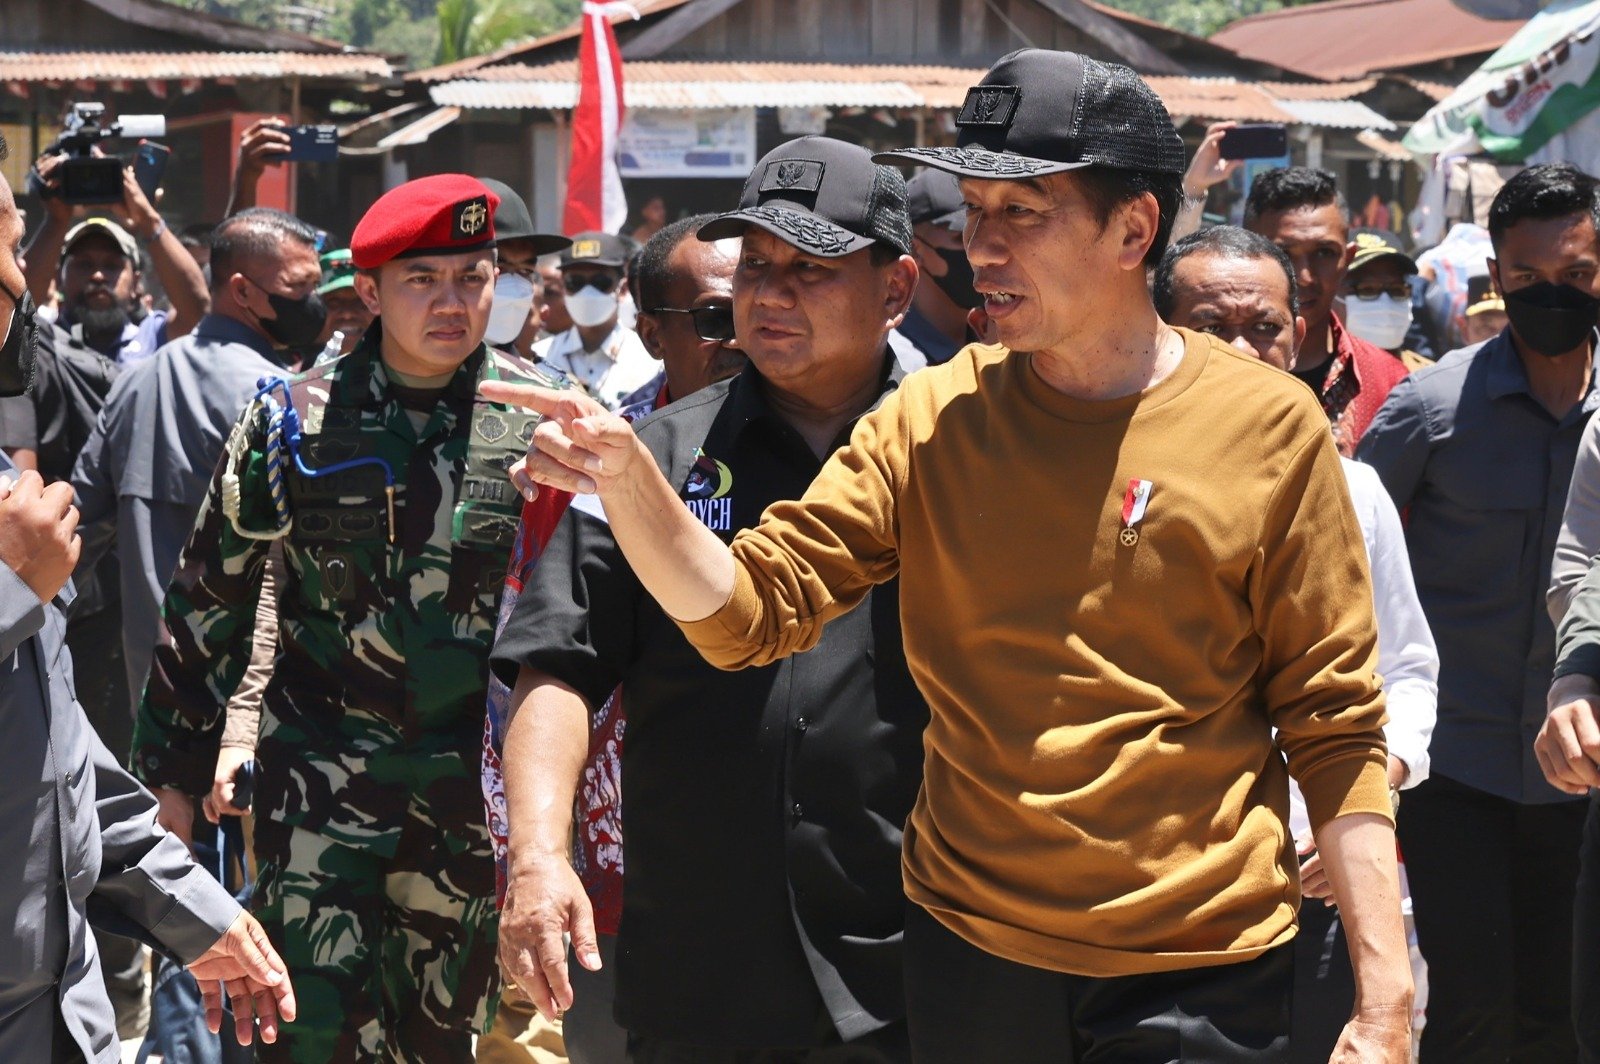 Kebersamaan Prabowo dan Jokowi/Tim Media